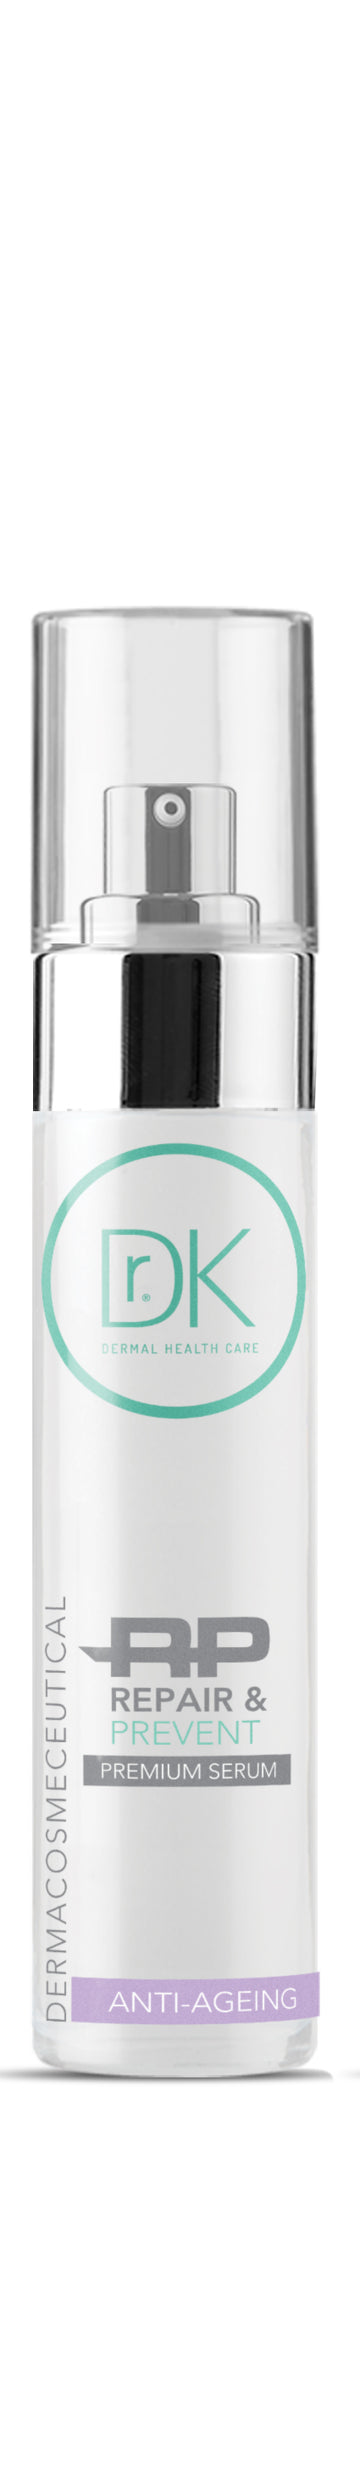 Dr.K Repair & Prevent Premium Serum 40ml